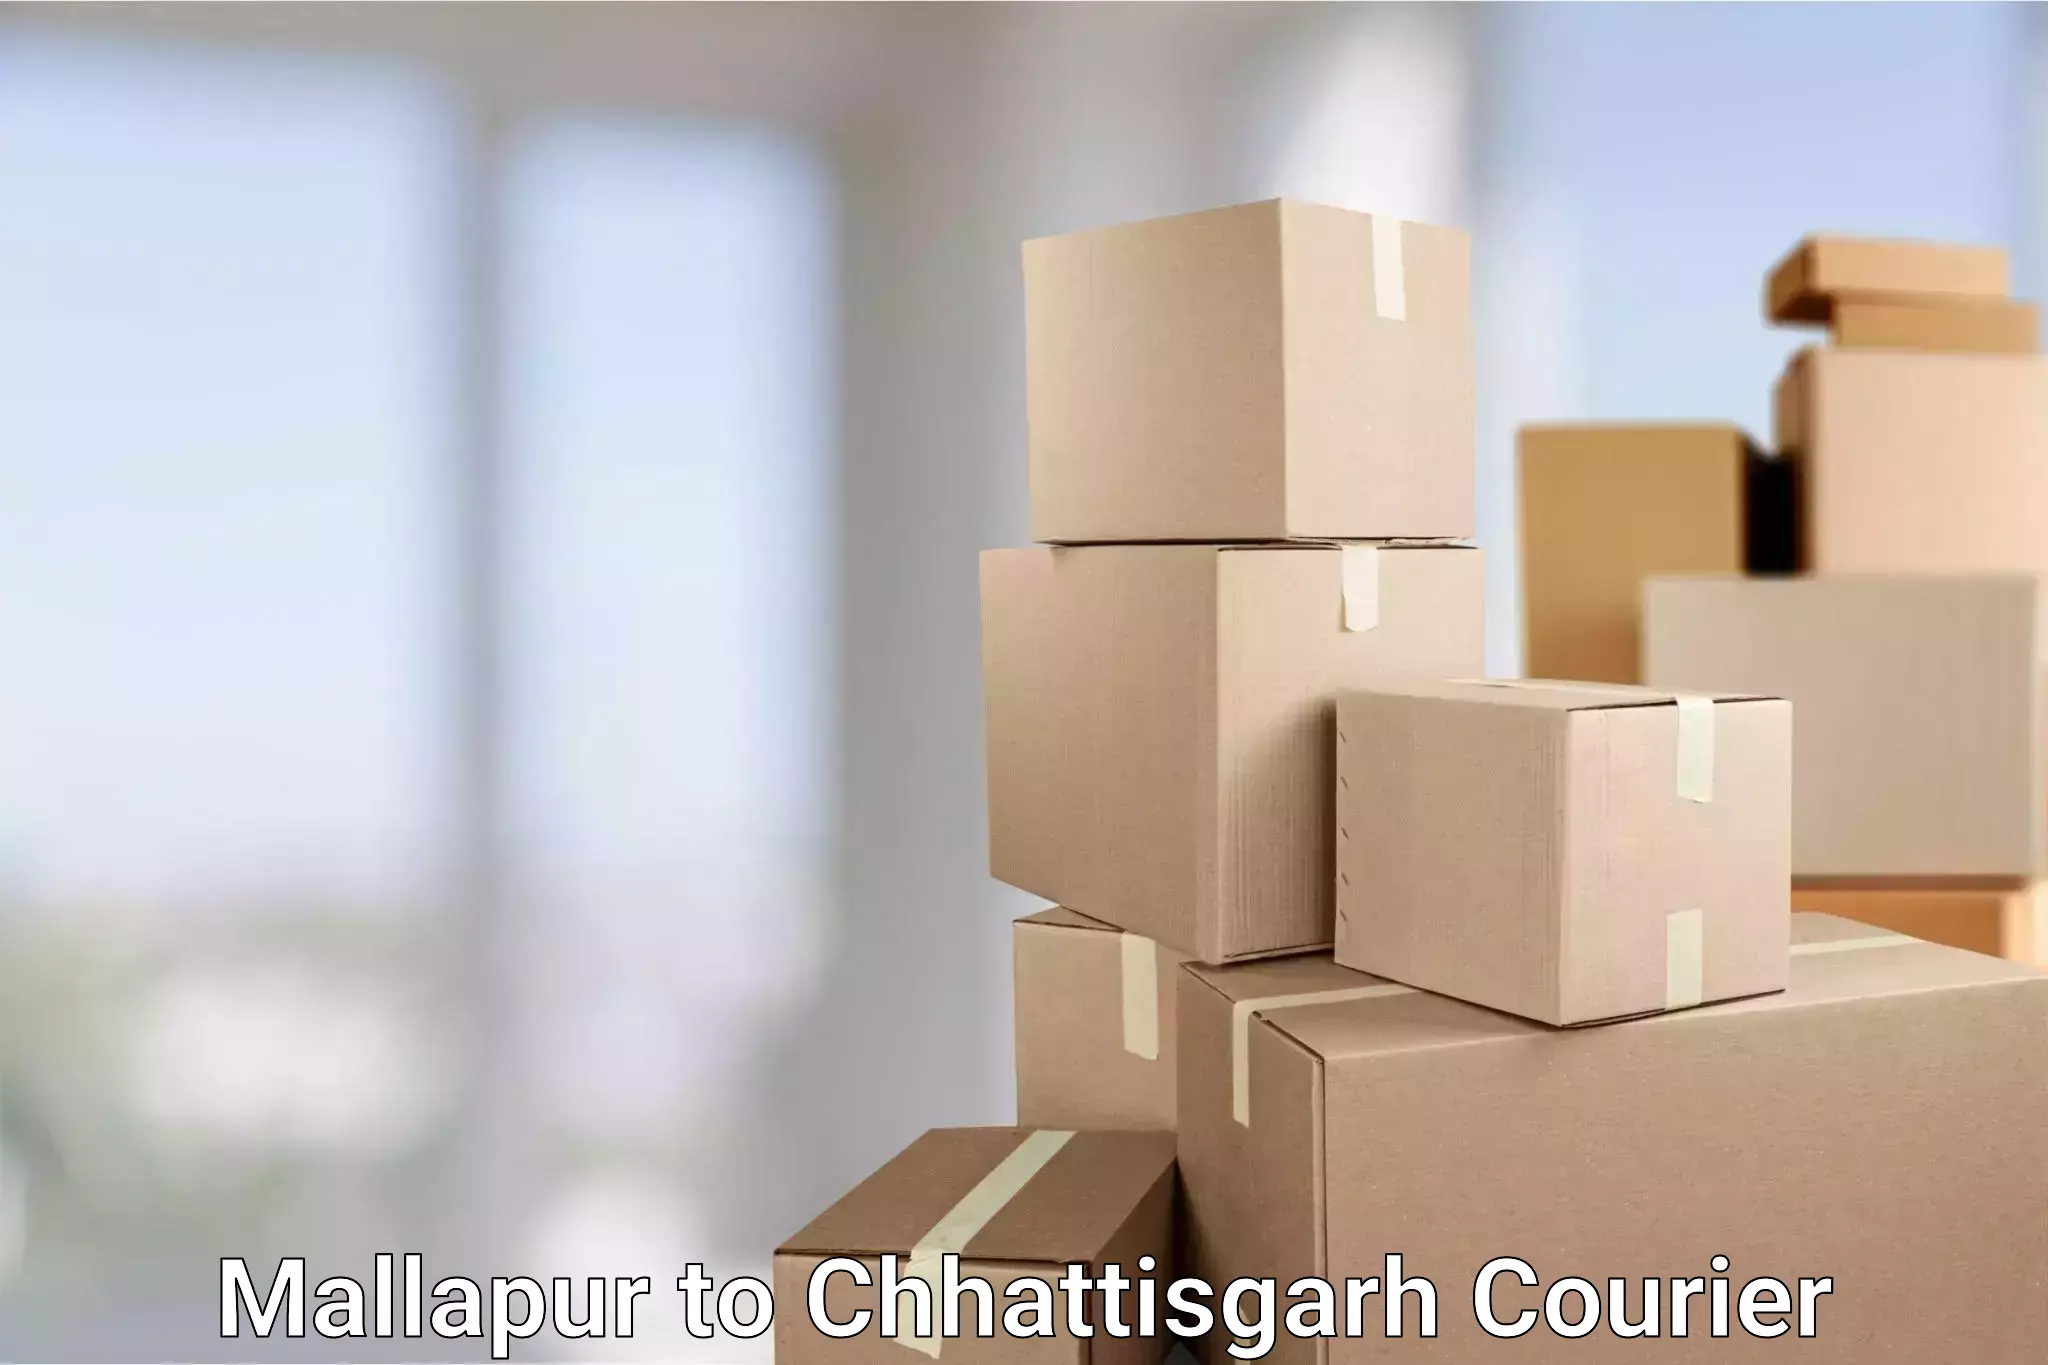 Personal parcel delivery in Mallapur to Patna Chhattisgarh